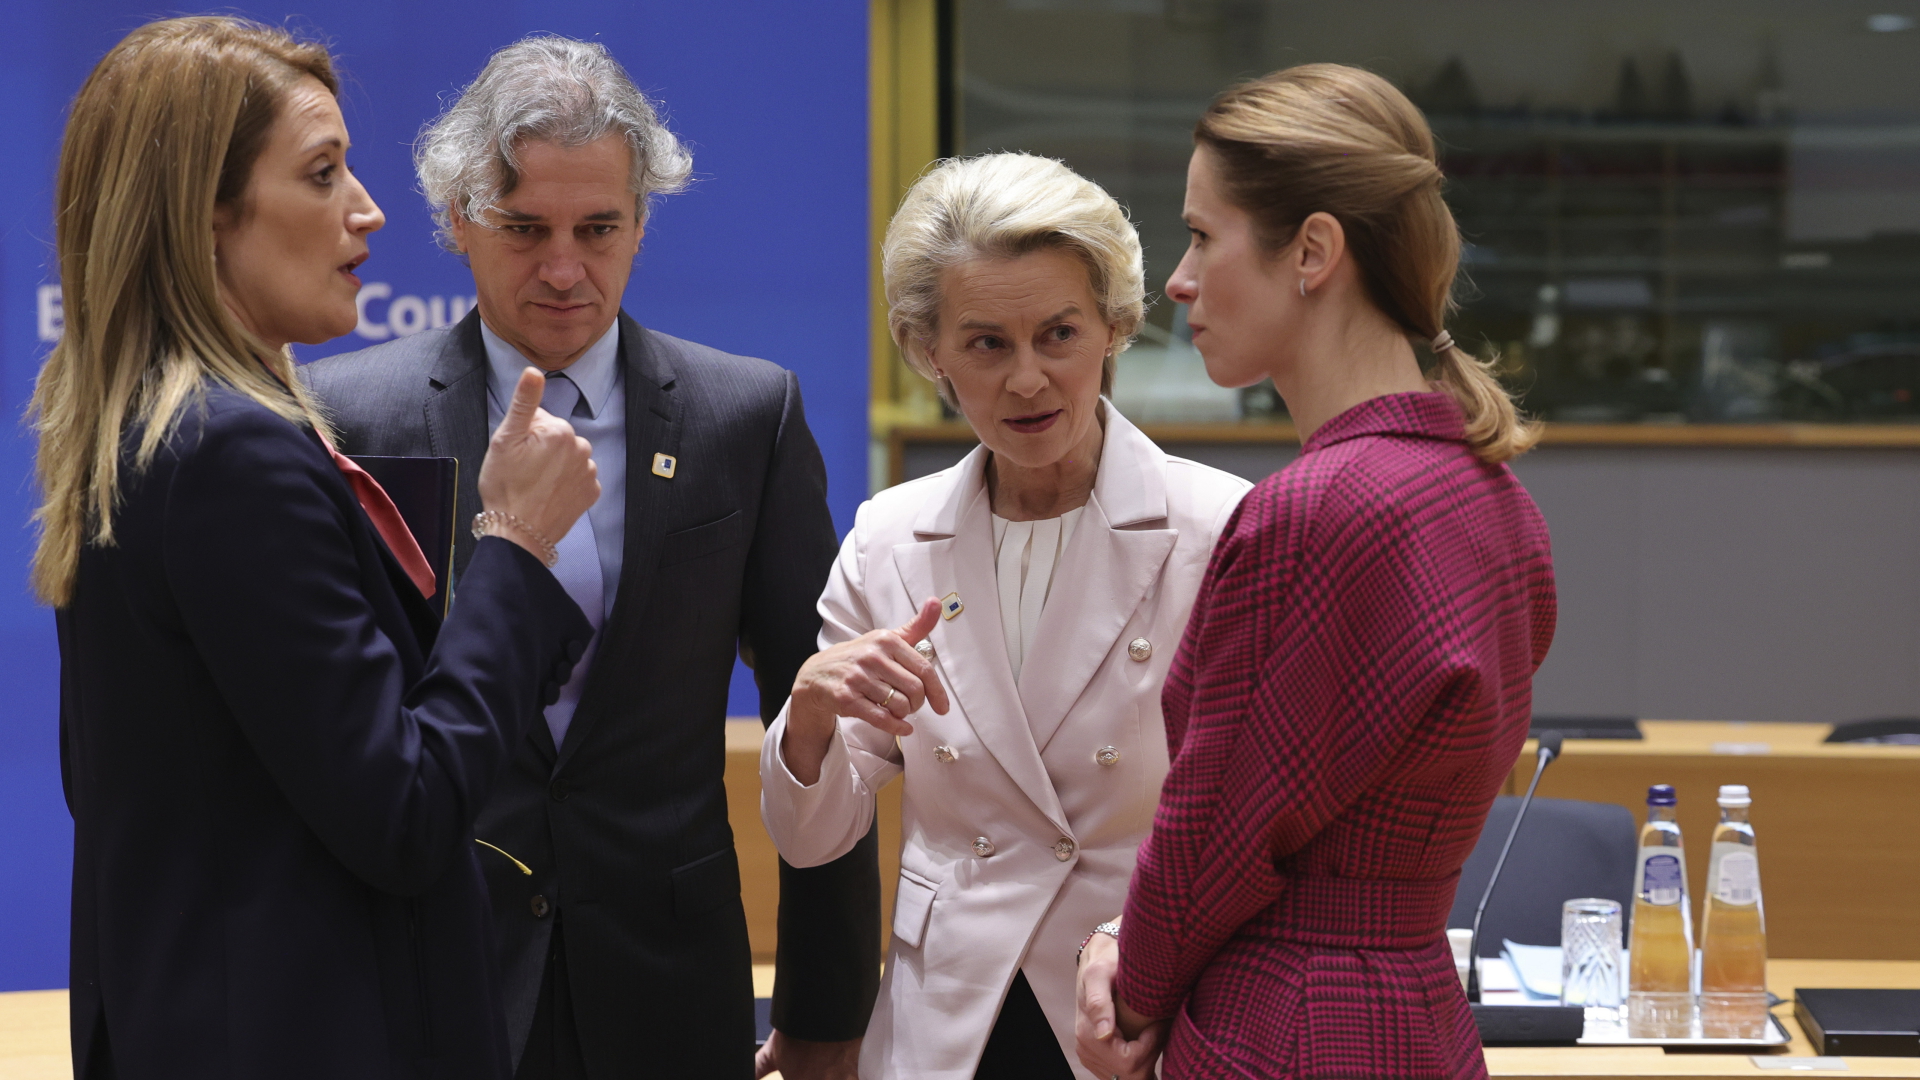 Roberta Metsola (von links nach rechts), Präsidentin des Europäischen Parlaments, Robert Golob, Ministerpräsident von Slowenien, Ursula von der Leyen, Präsidentin der Europäischen Kommission, und Kaja Kallas, Ministerpräsidentin von Estland, nehmen an einem runden Tisch während des EU-Gipfels teil. | dpa